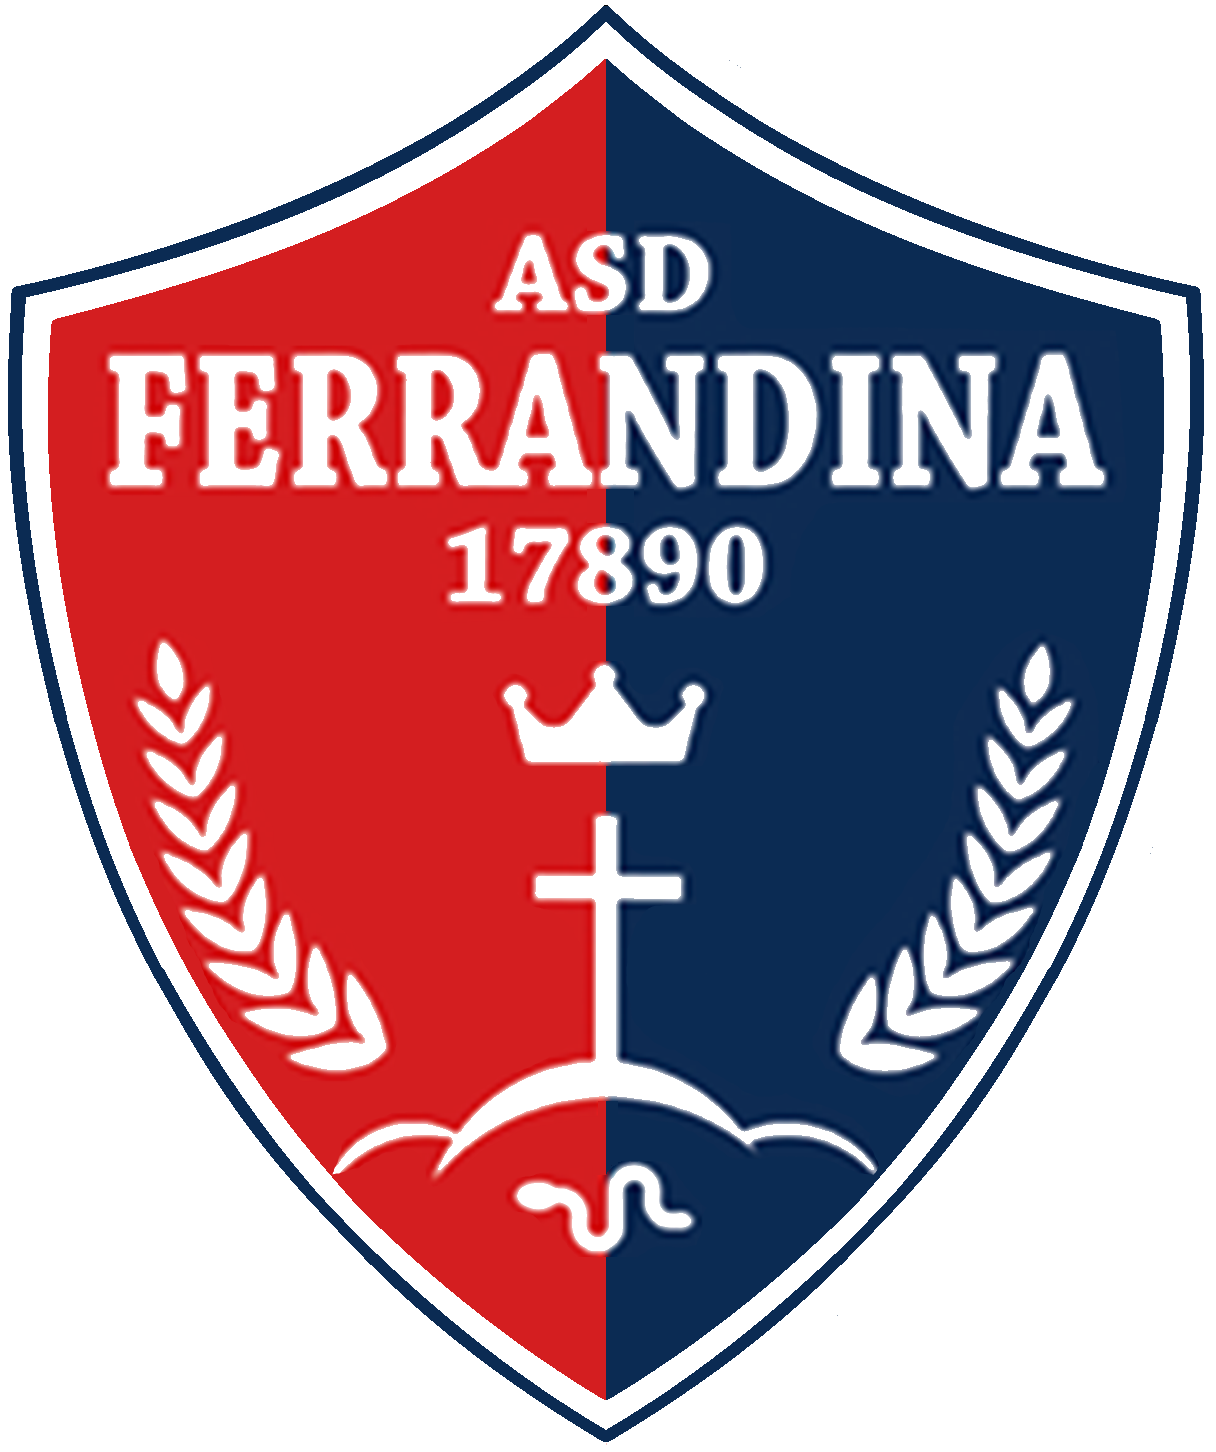 Wappen ASD Ferrandina 17890  77135